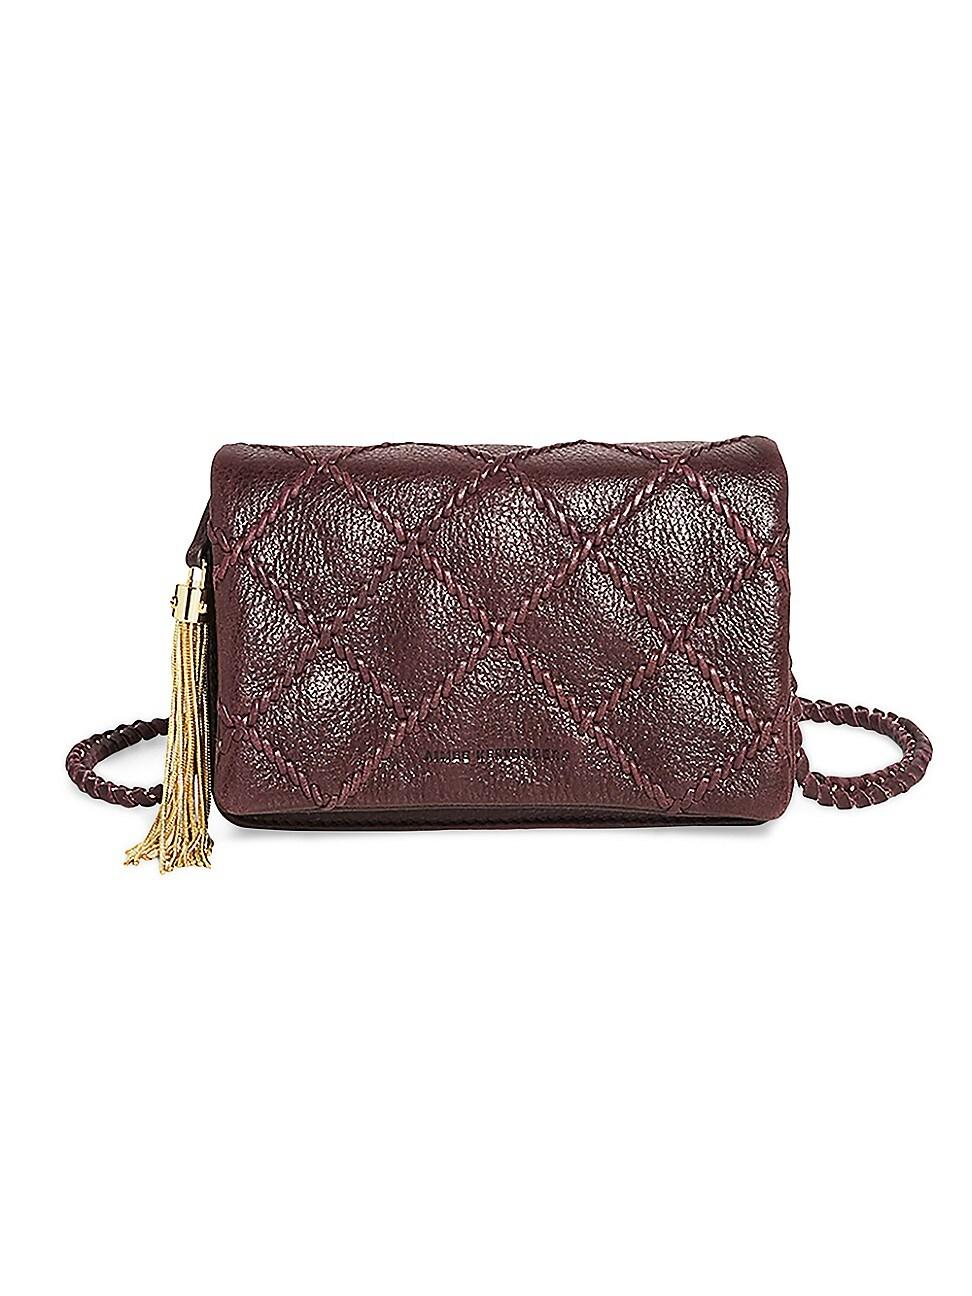 Aimee Kestenberg Mini Sedona Convertible Leather Crossbody Bag in Cumin